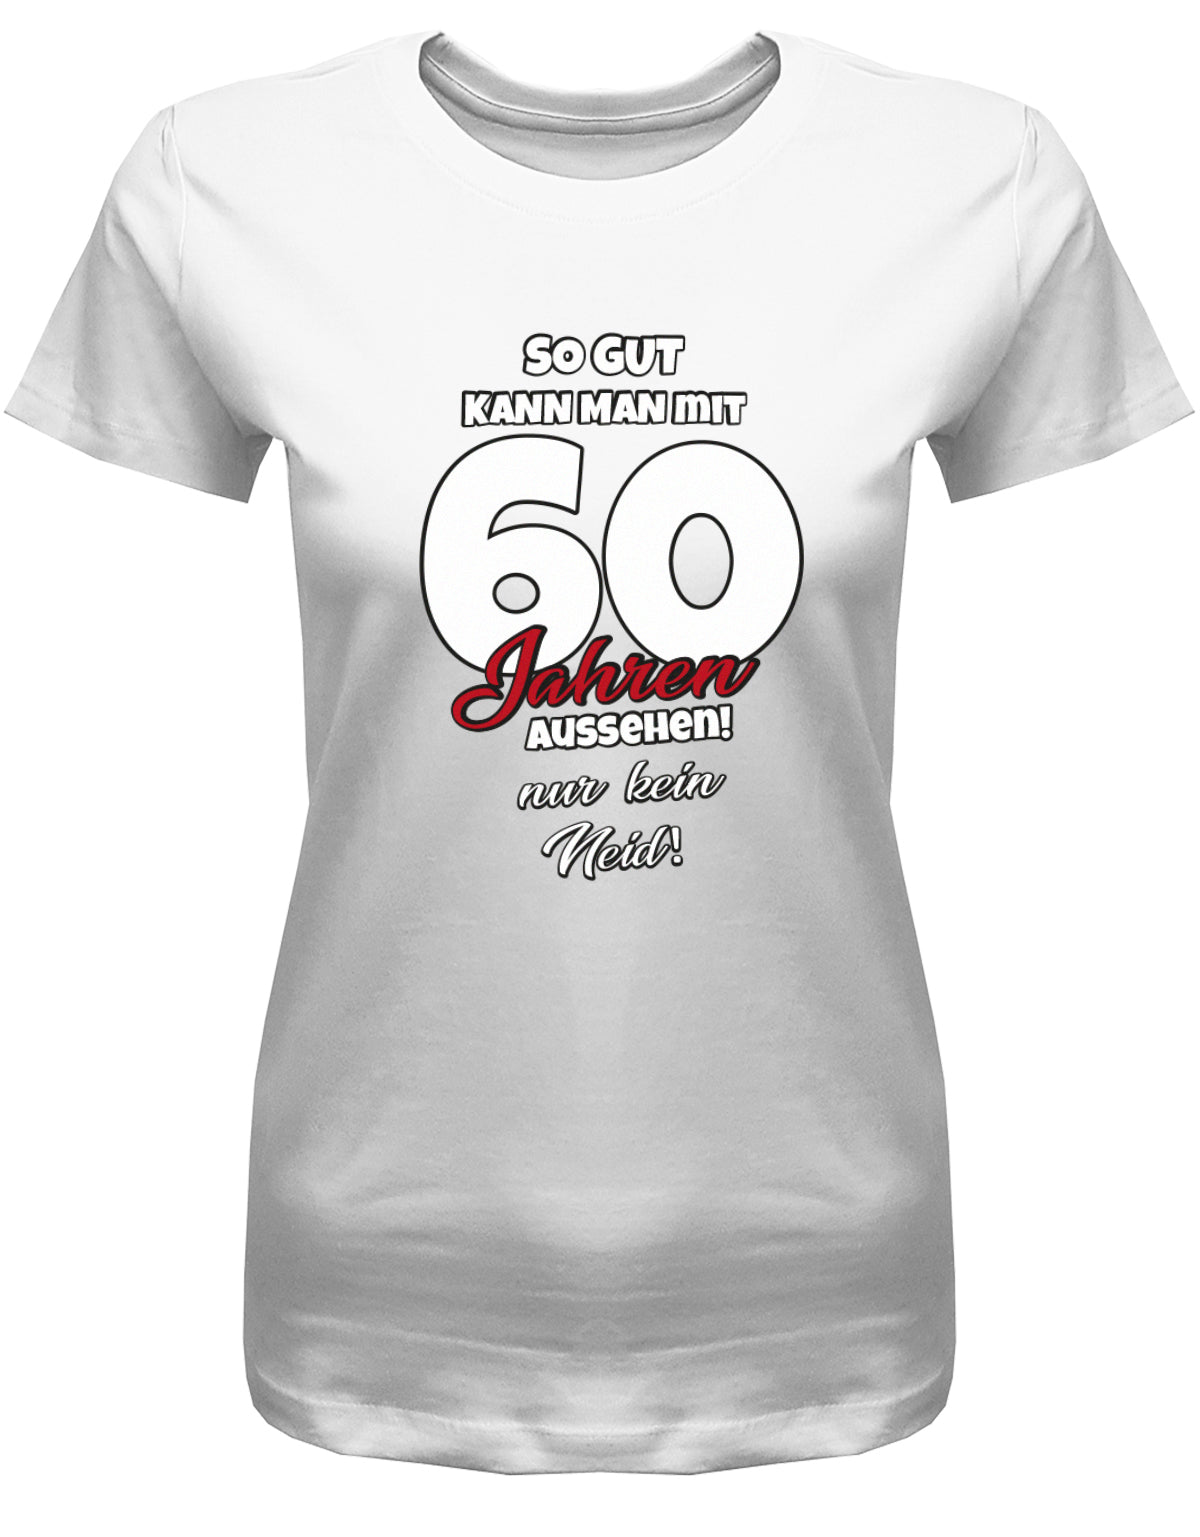 Lustiges T-Shirt zum 60 Geburtstag für die Frau Bedruckt mit So gut kann man mit 60 Jahren aussehen! Nur kein Neid! Weiss